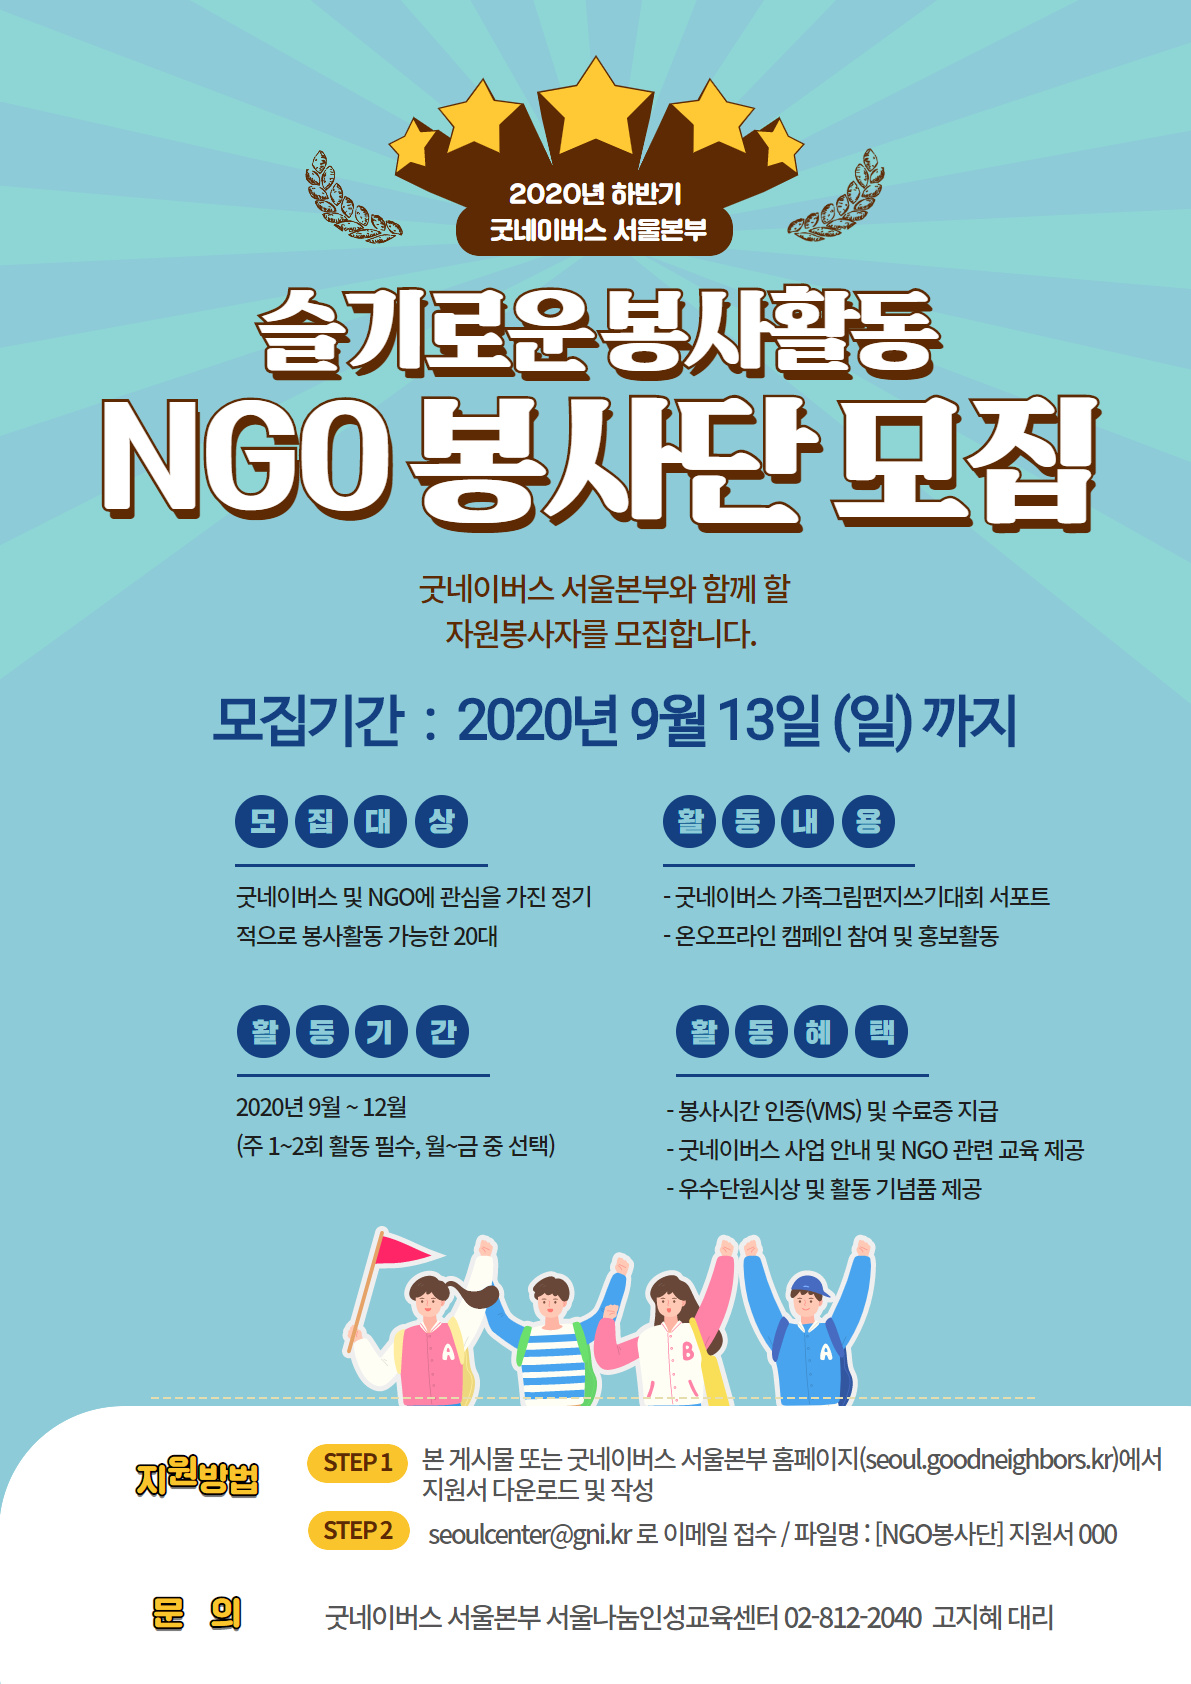 [굿네이버스 서울본부] NGO 봉사단 모집